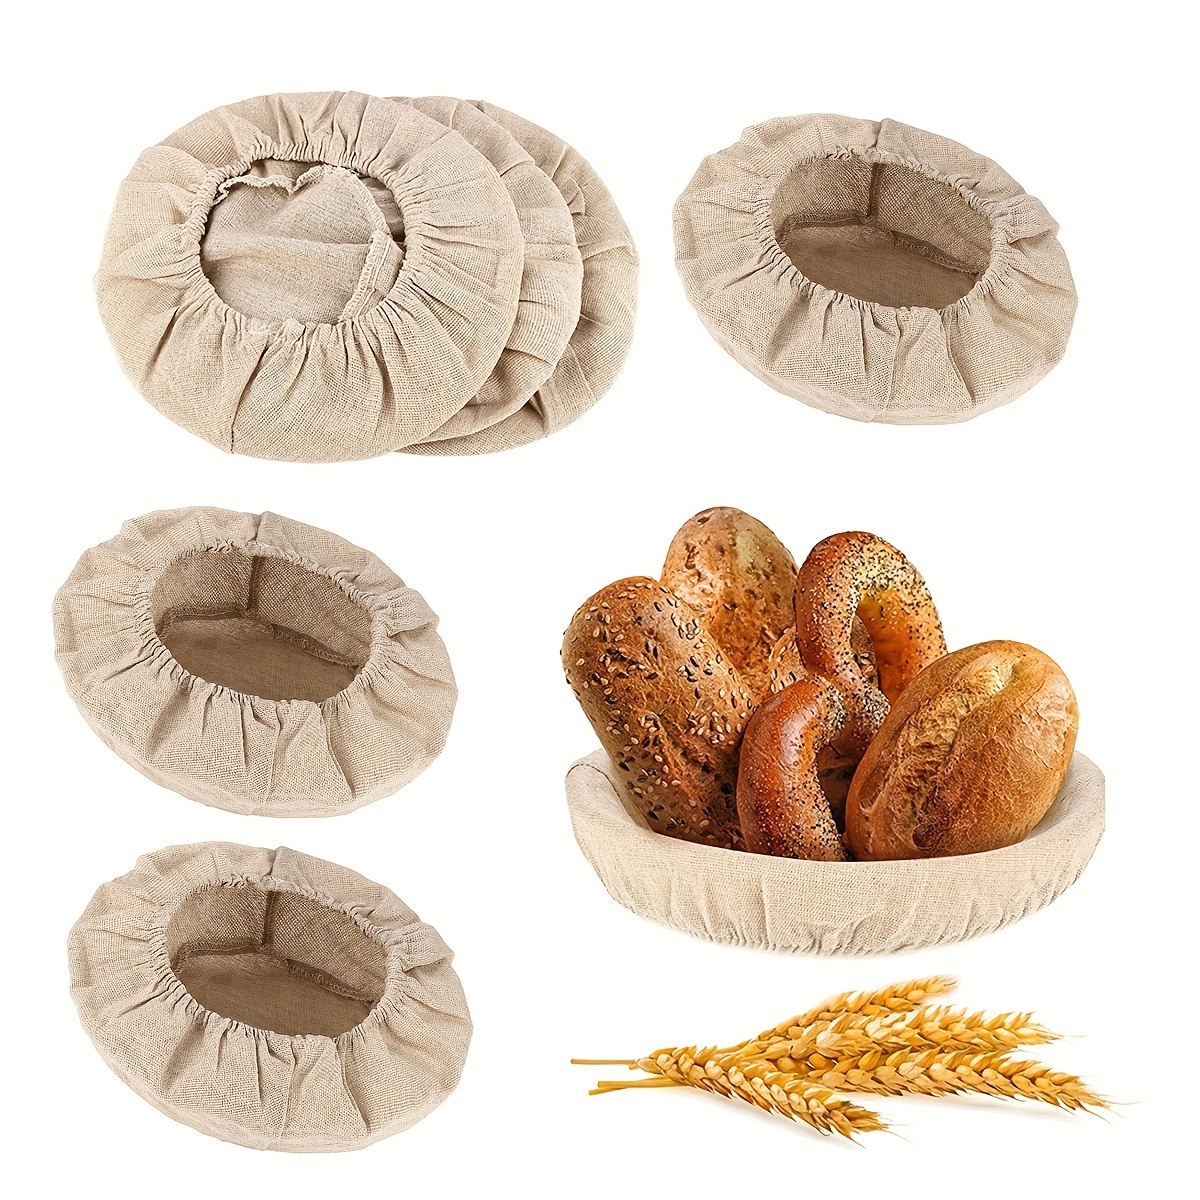 Banneton de ratán, cesta de fermentación para pan de masa madre